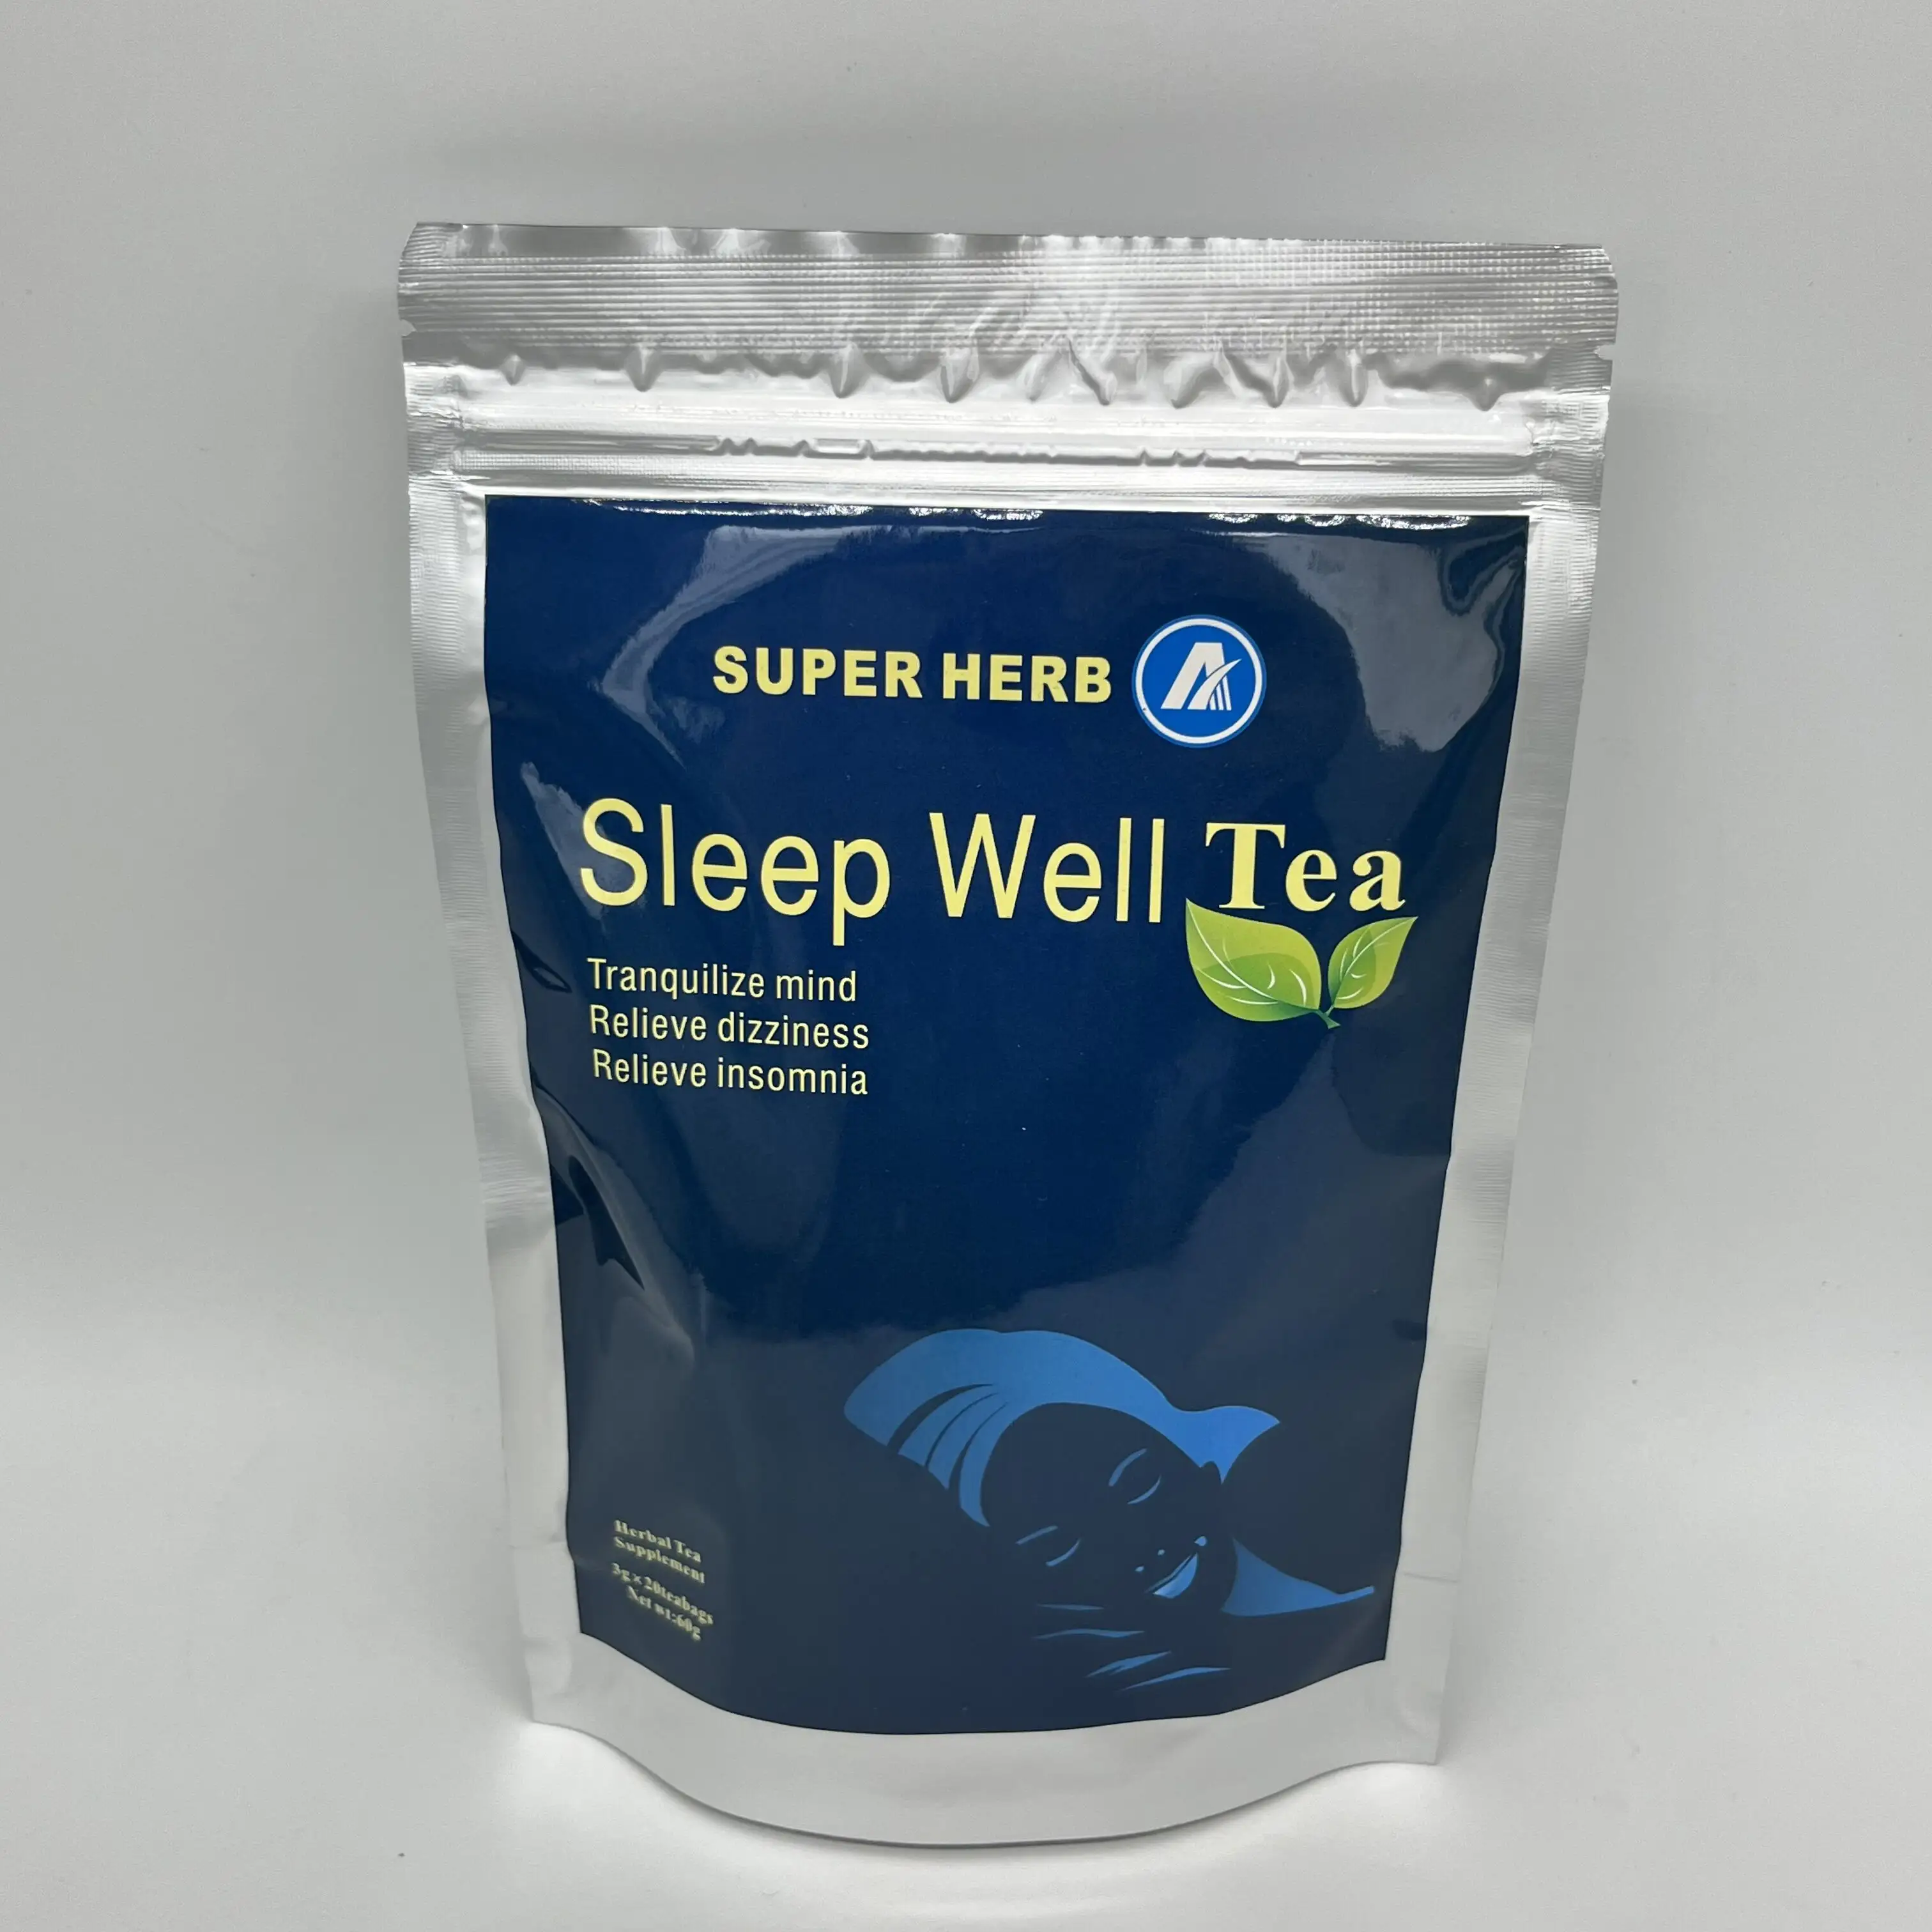 ชาสมุนไพรบรรเทาอาการนอนไม่หลับและความวิตกกังวลนอนหลับได้ดี